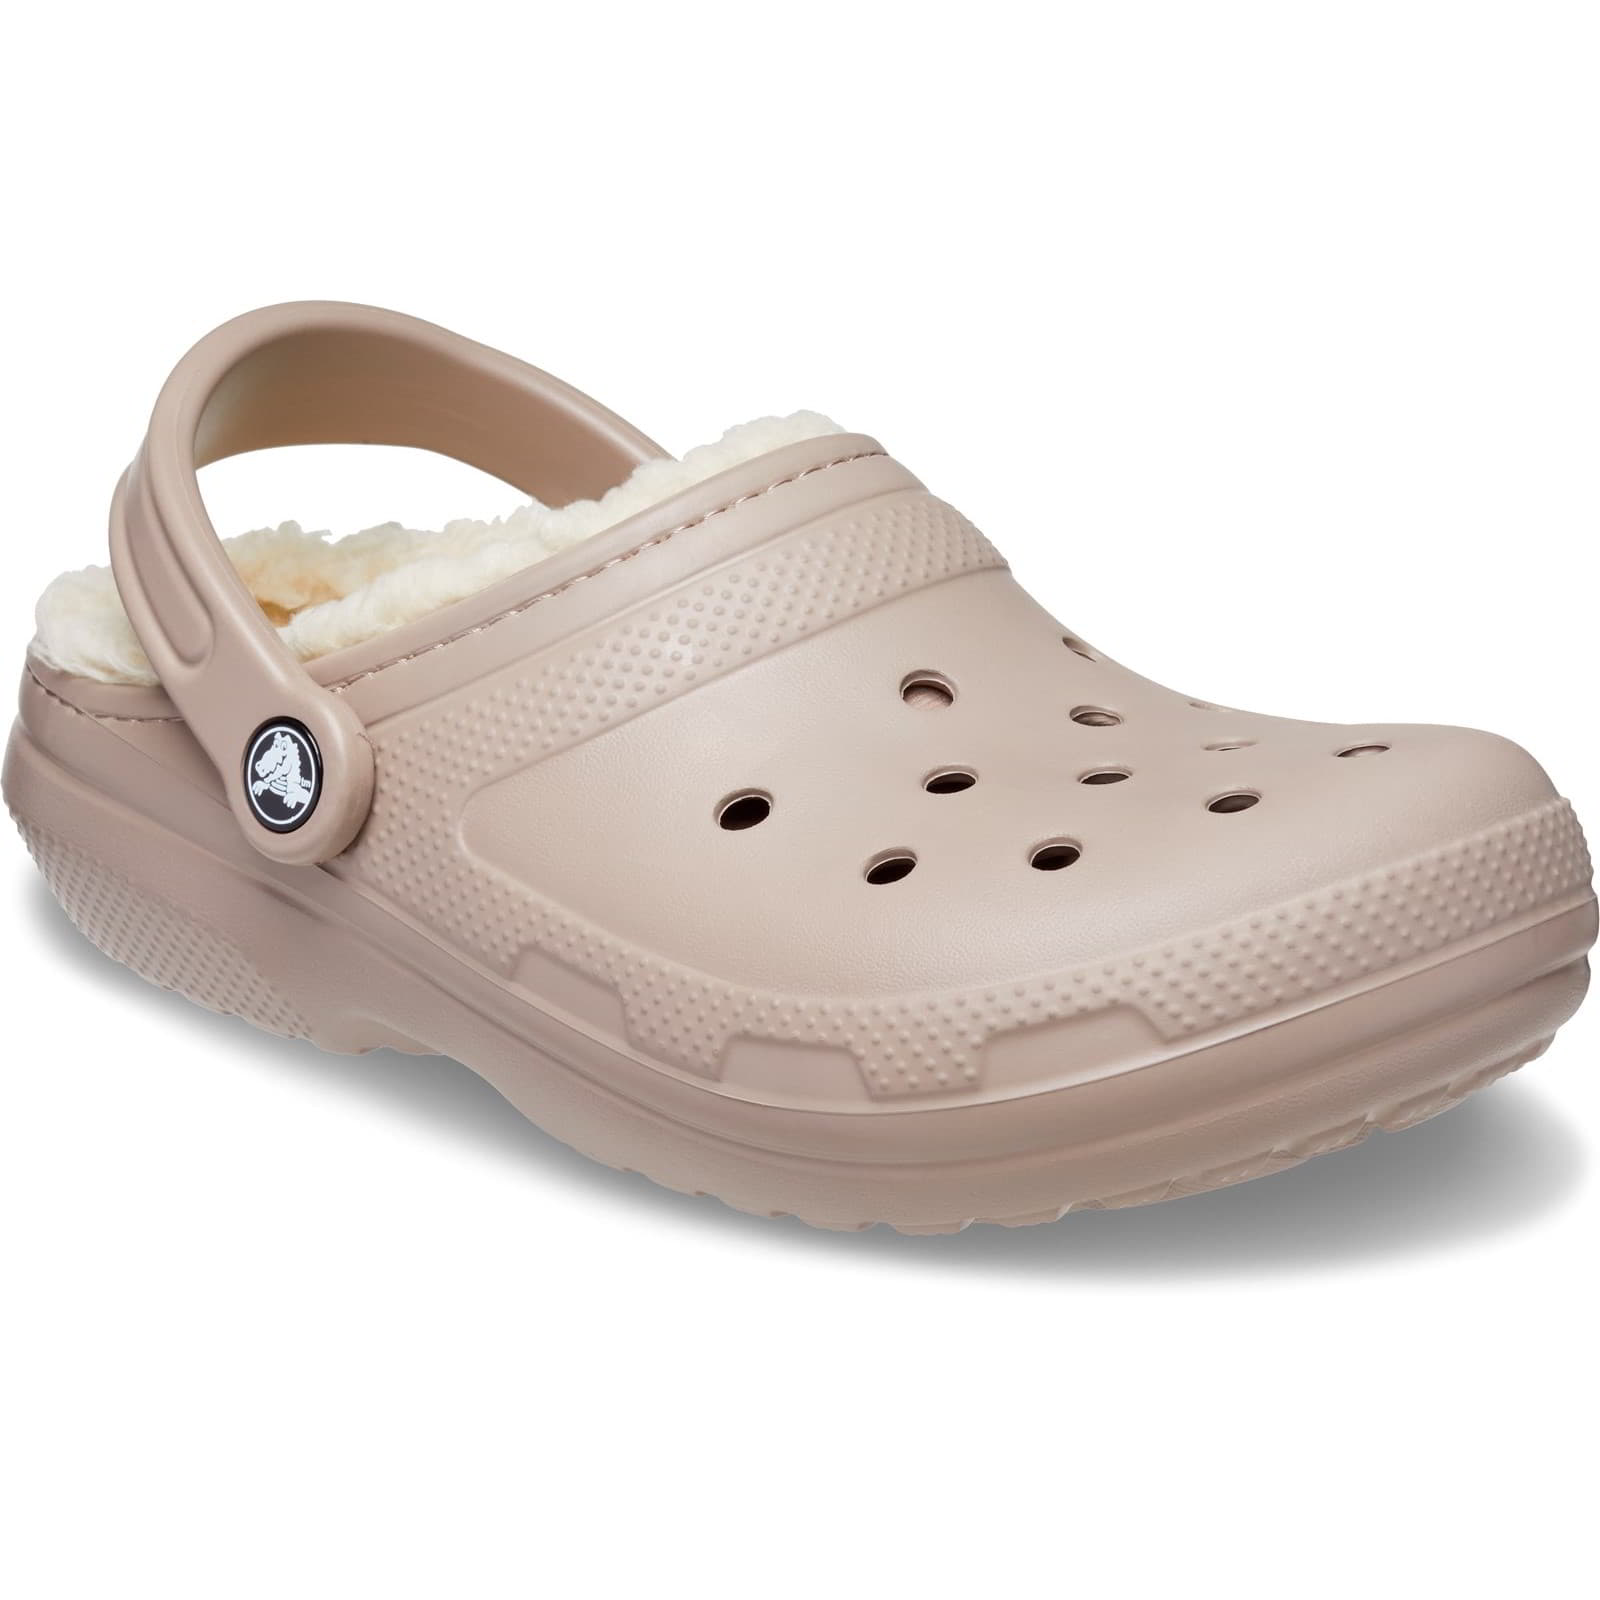 Crocs Men's Women's Classic Lined Clog Warm Slip On Slippers Shoes - UK M8-W9 / EU 42-43 / US M9-W11